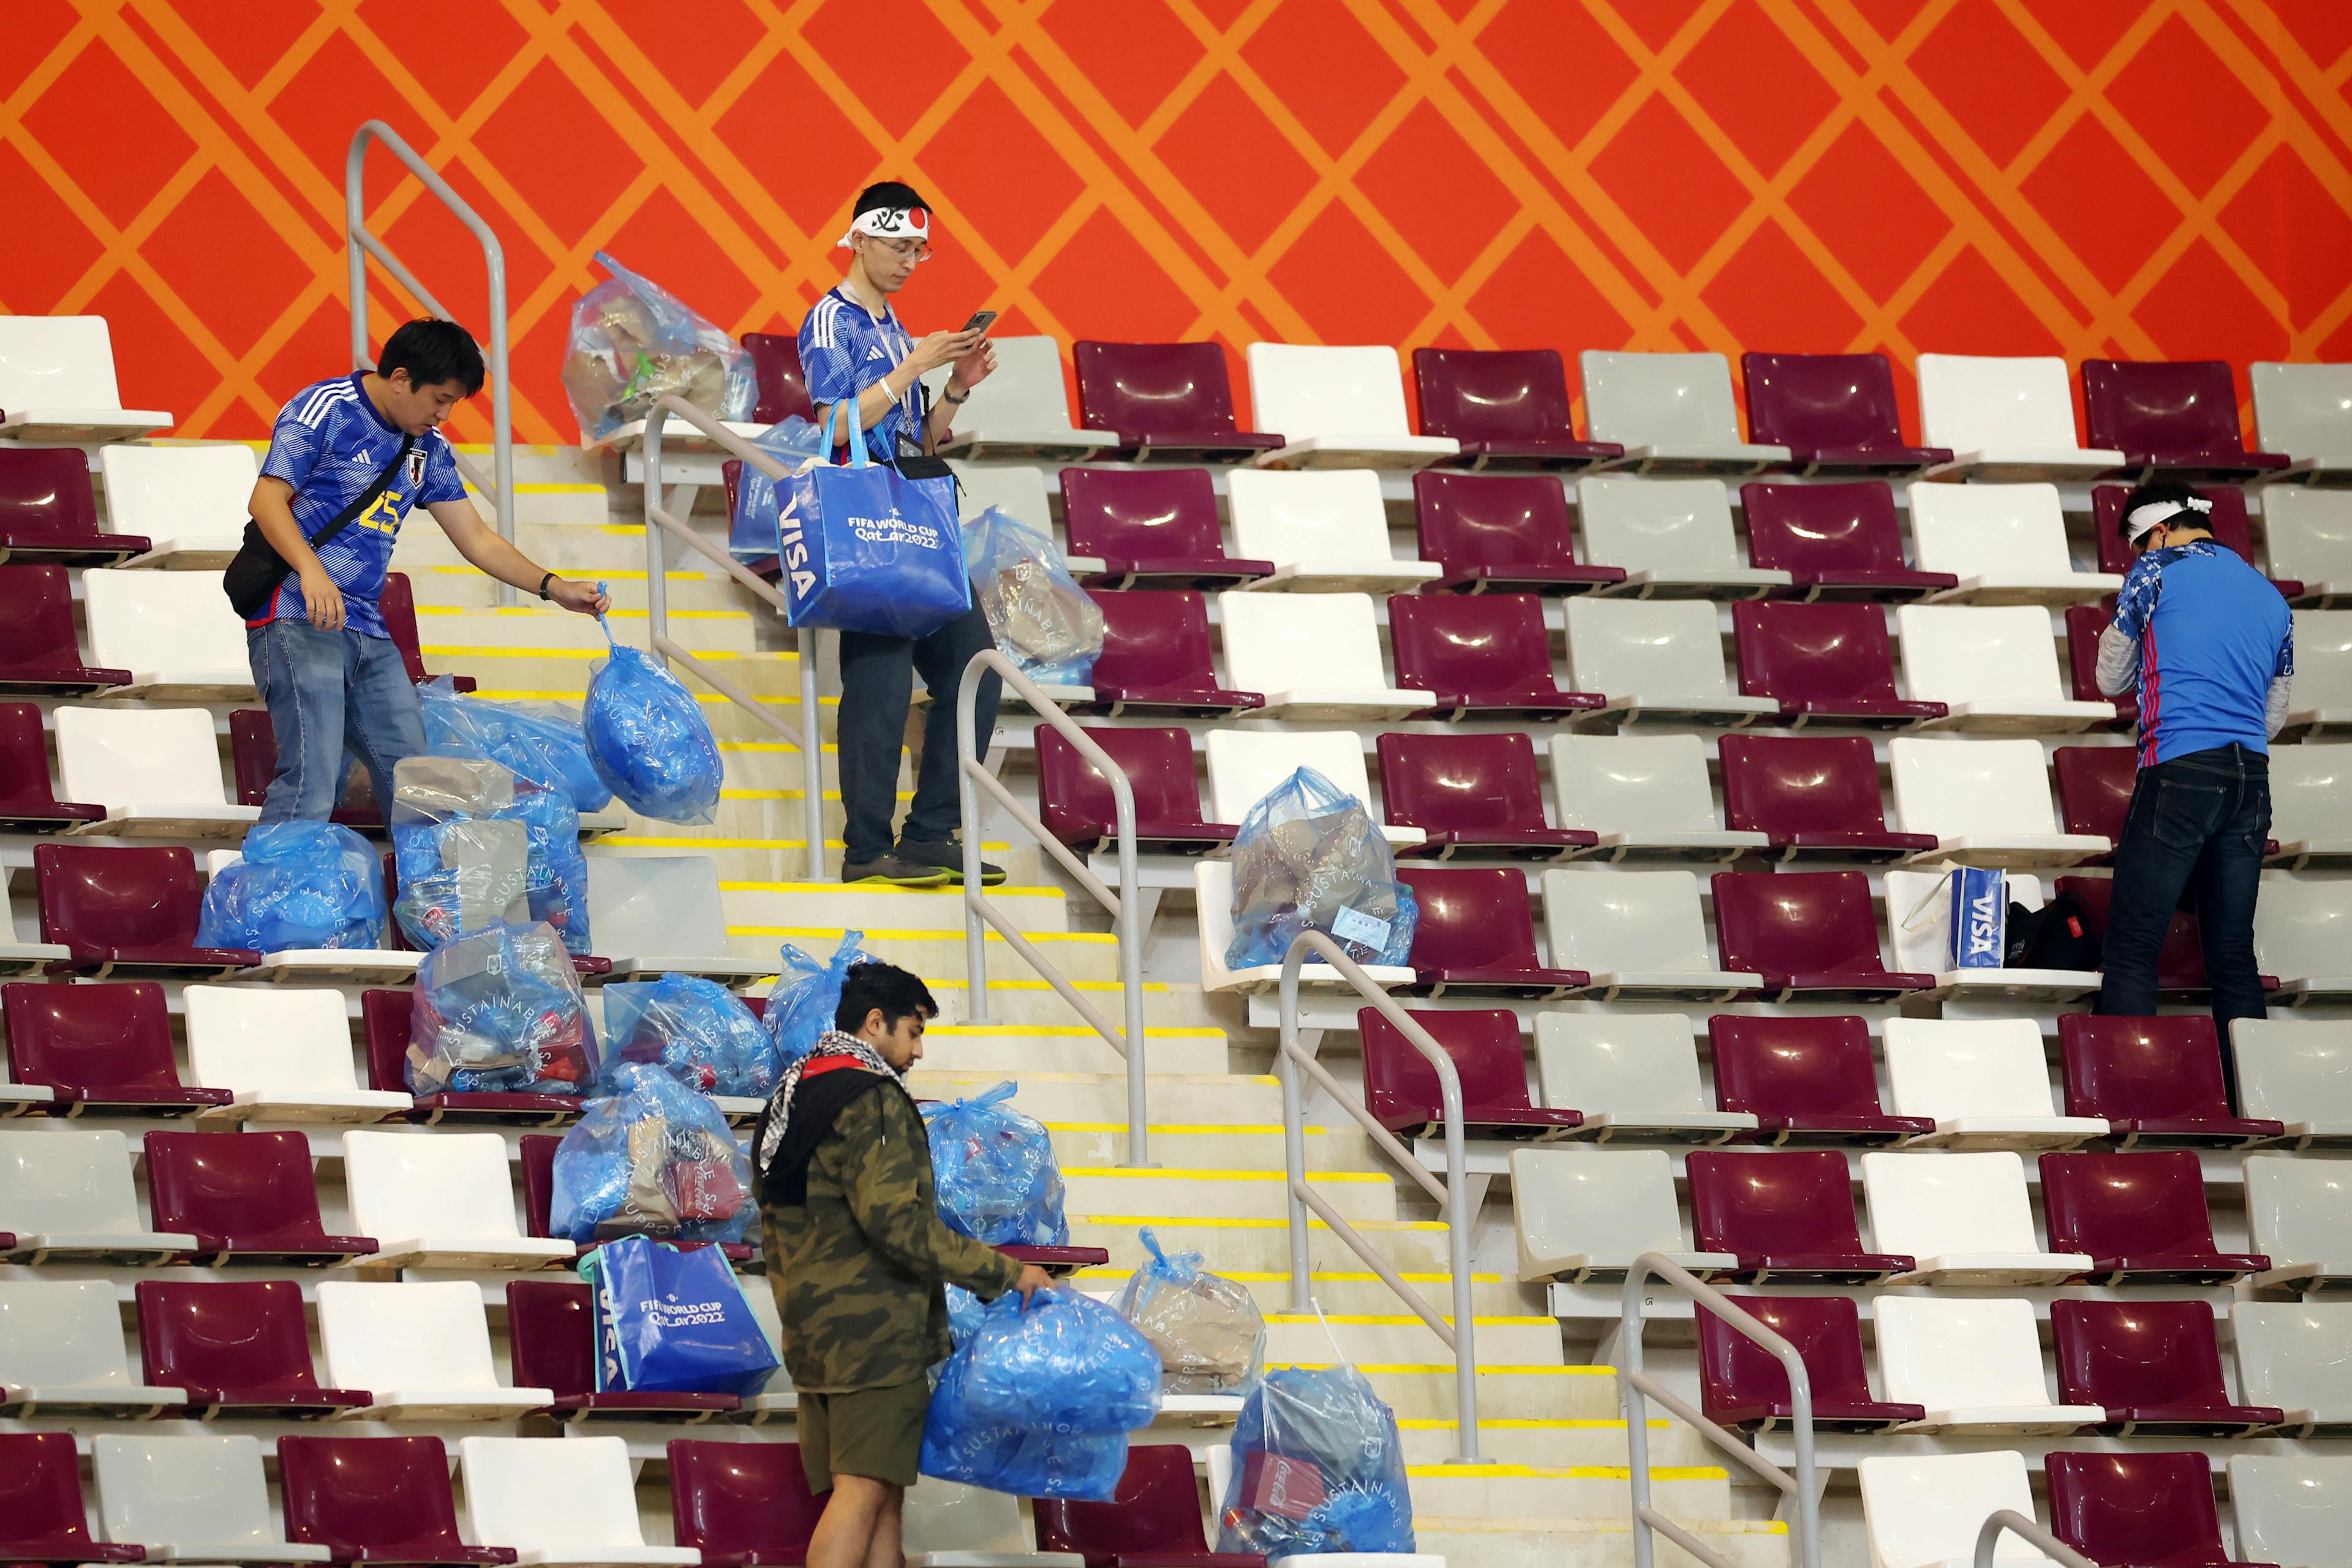 Los hinchas japoneses explicaron por qué limpian los estadios al terminar los partidos: “Tenemos que ayudar, nos han enseñado eso desde niños”